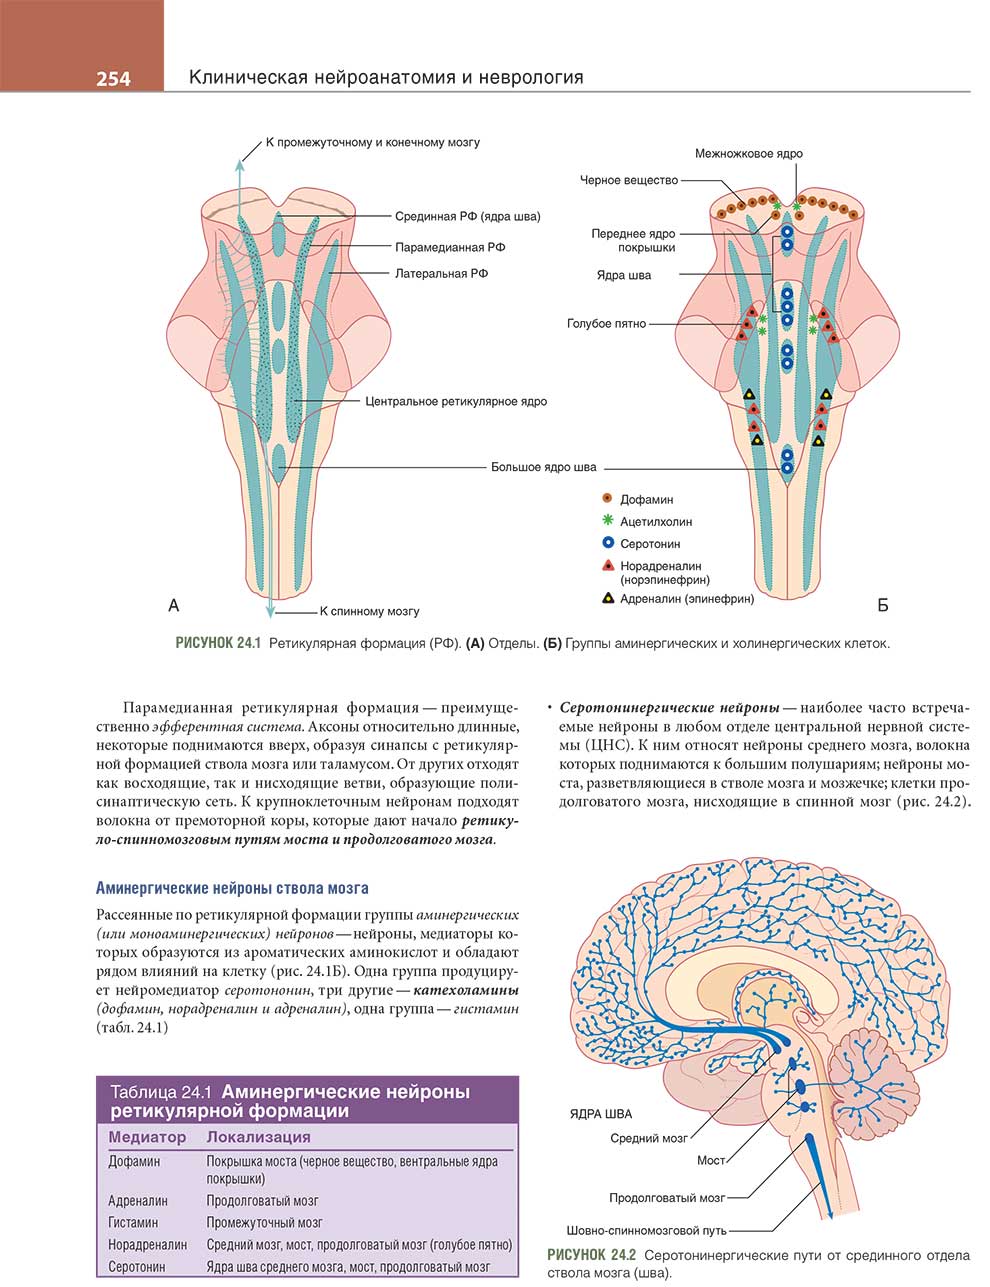 Серотонинергические пути от срединного отдела ствола мозга (шва).